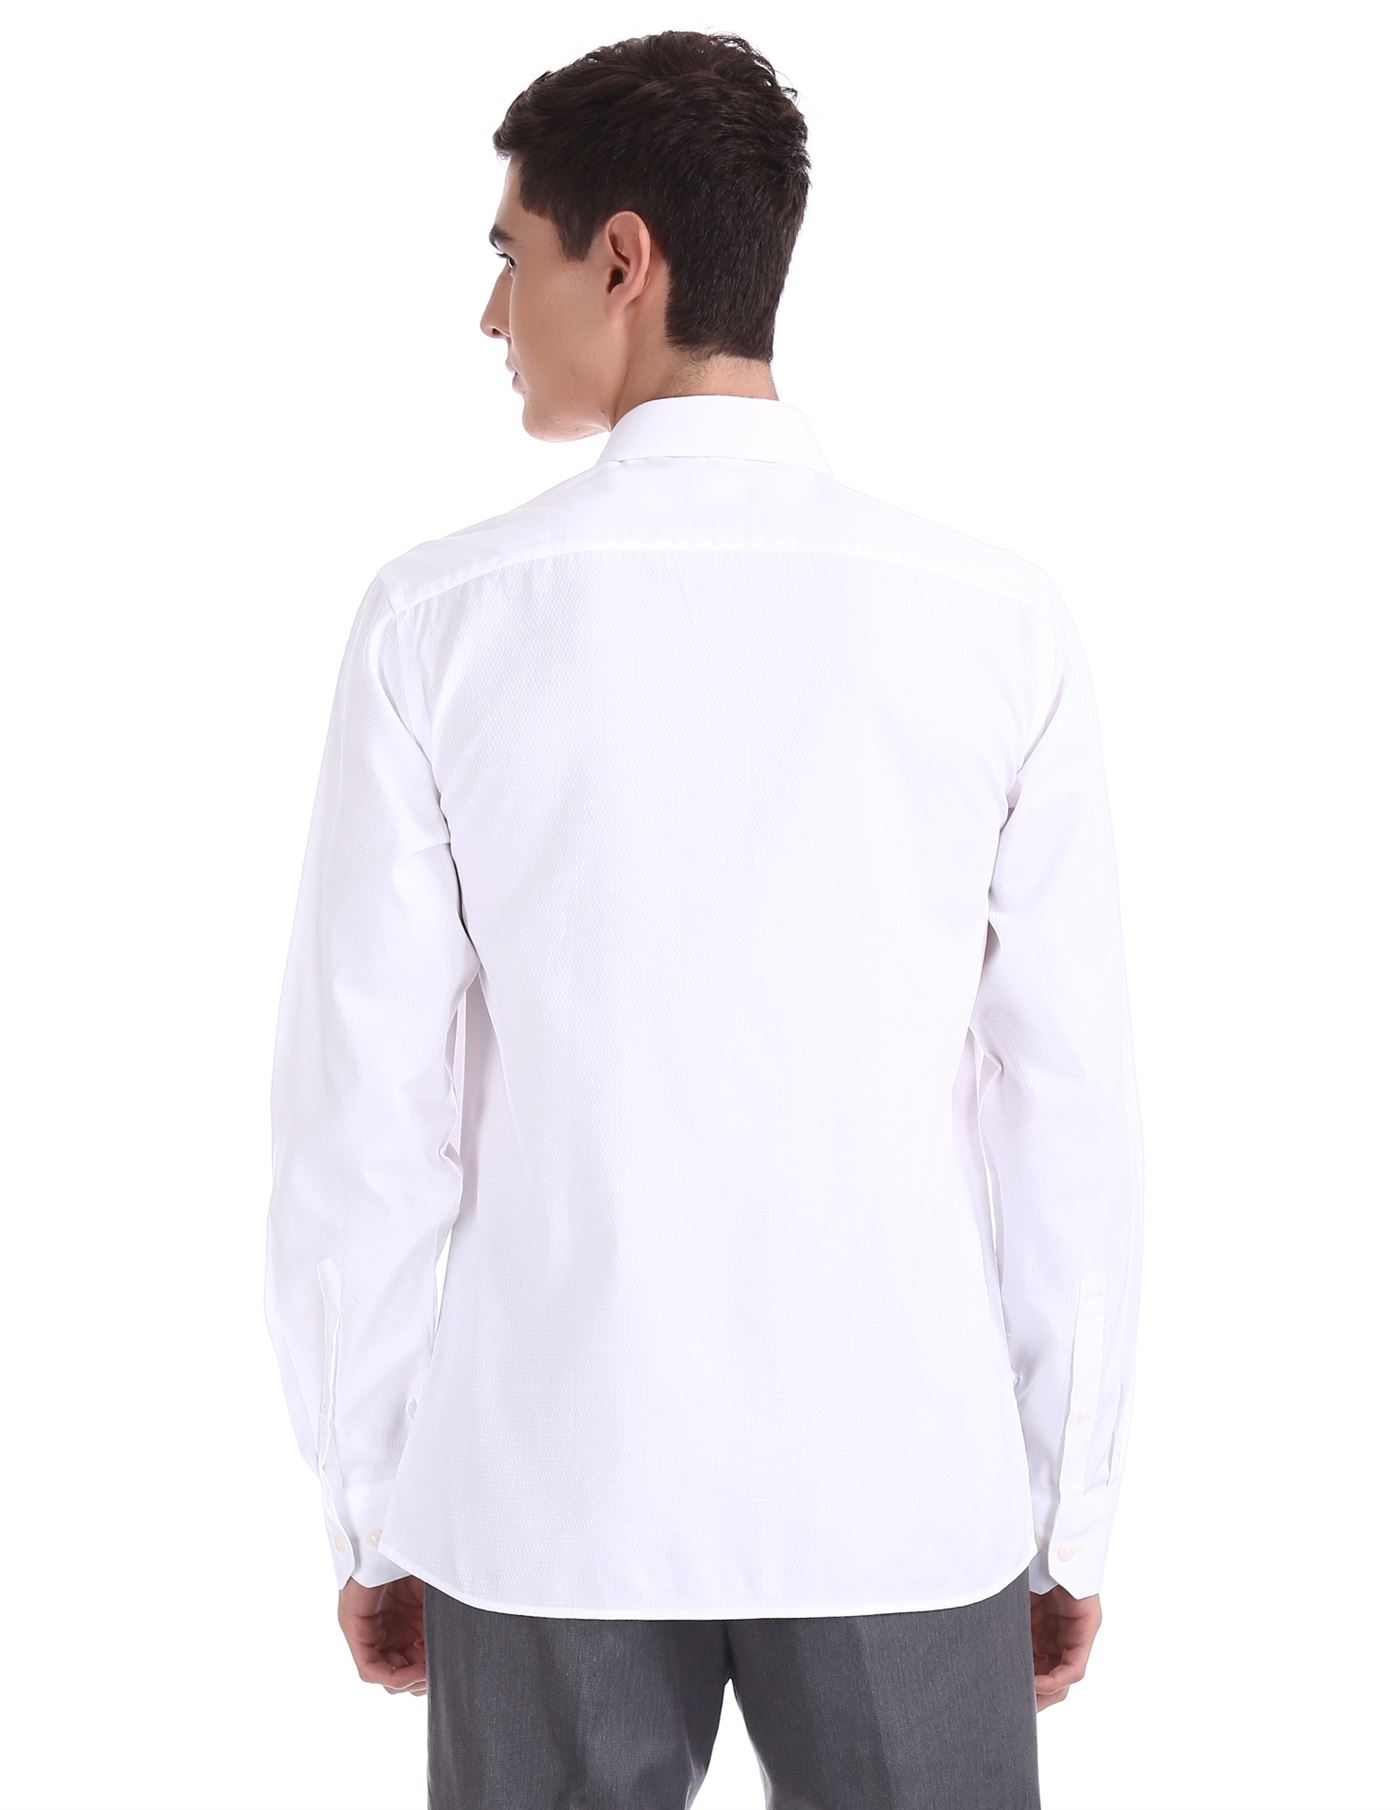 Arrow Men Formal Wear White Shirt